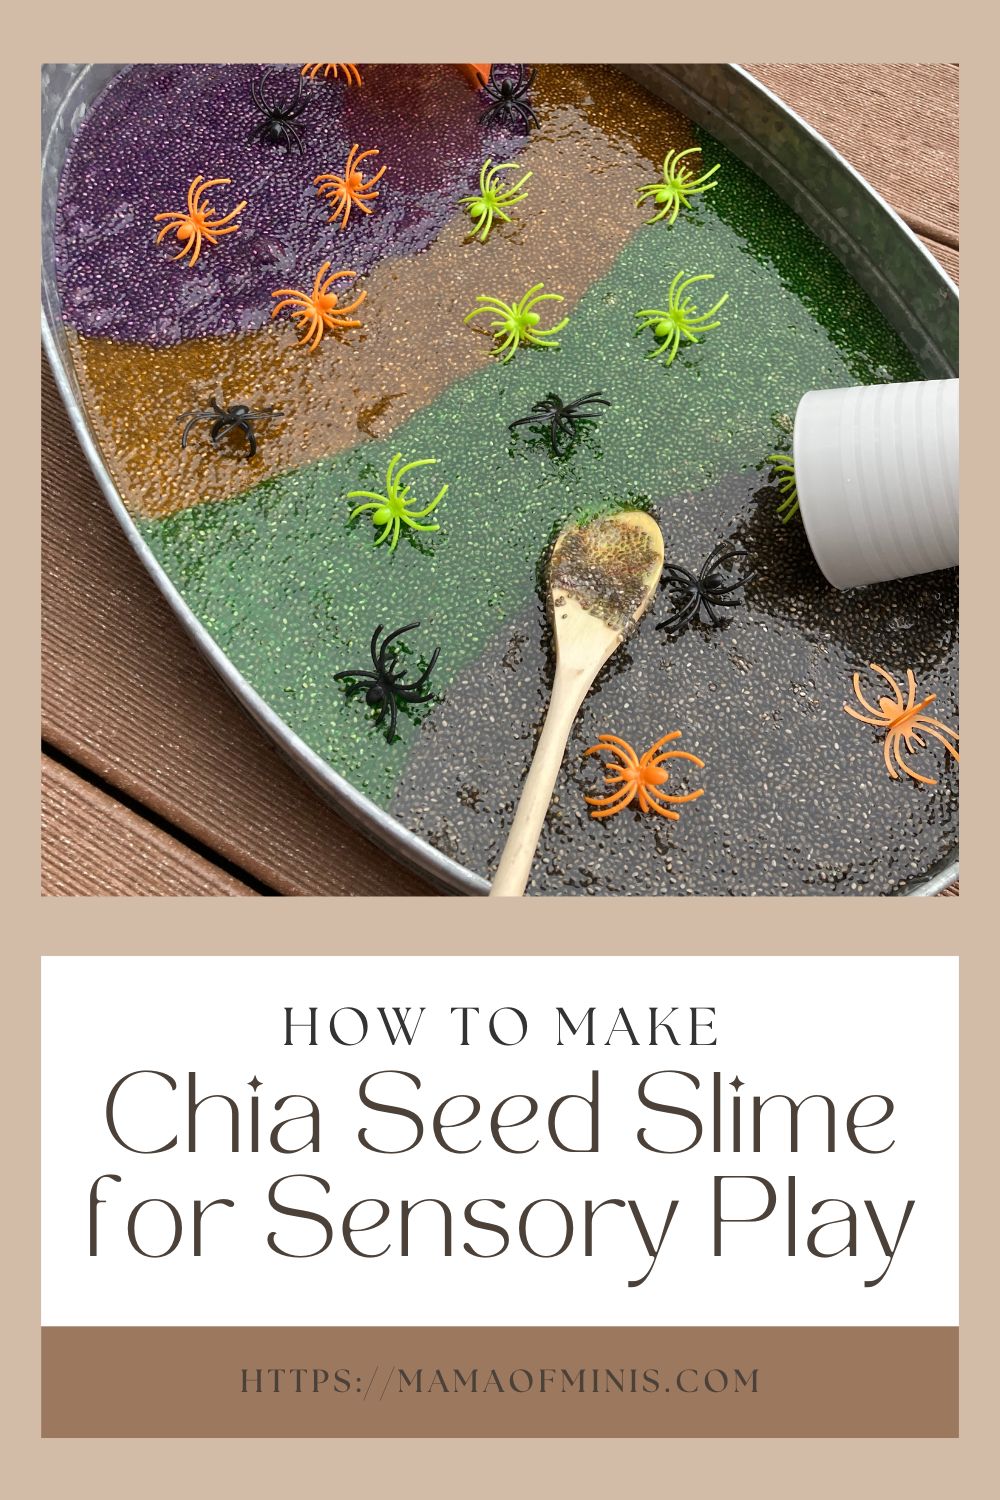 How to Make Chia Seed Slime for Sensory Play